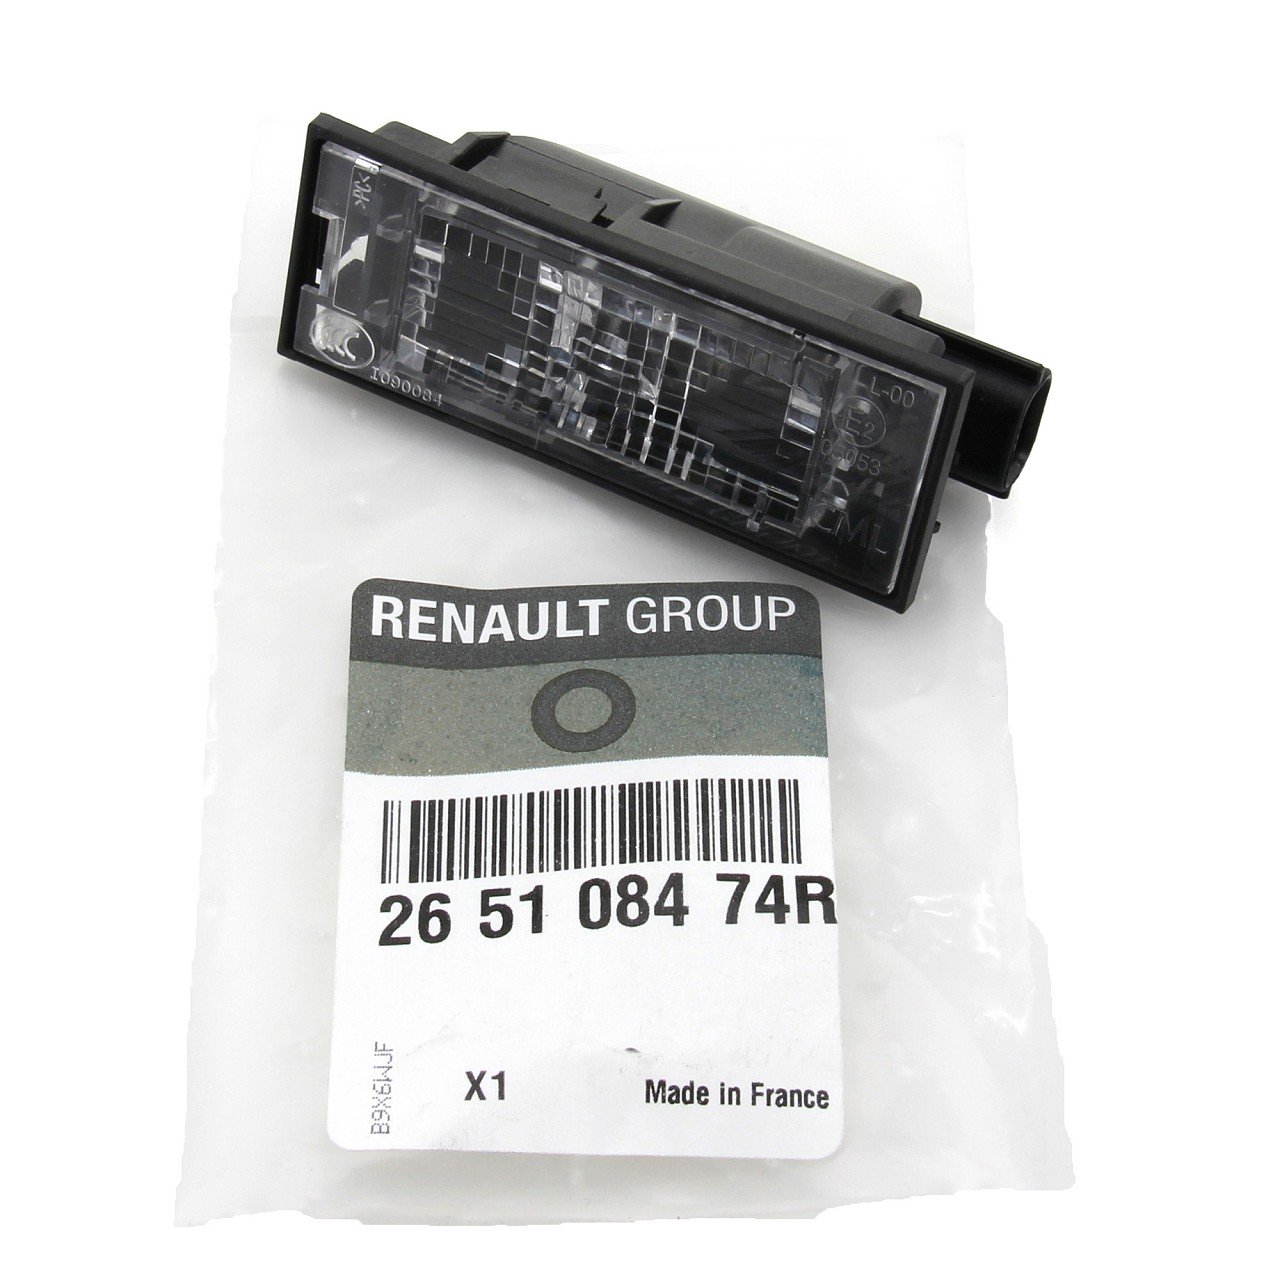 ORIGINAL Renault Kennzeichenleuchte Nummernschildleuchte Megane III 265108474R